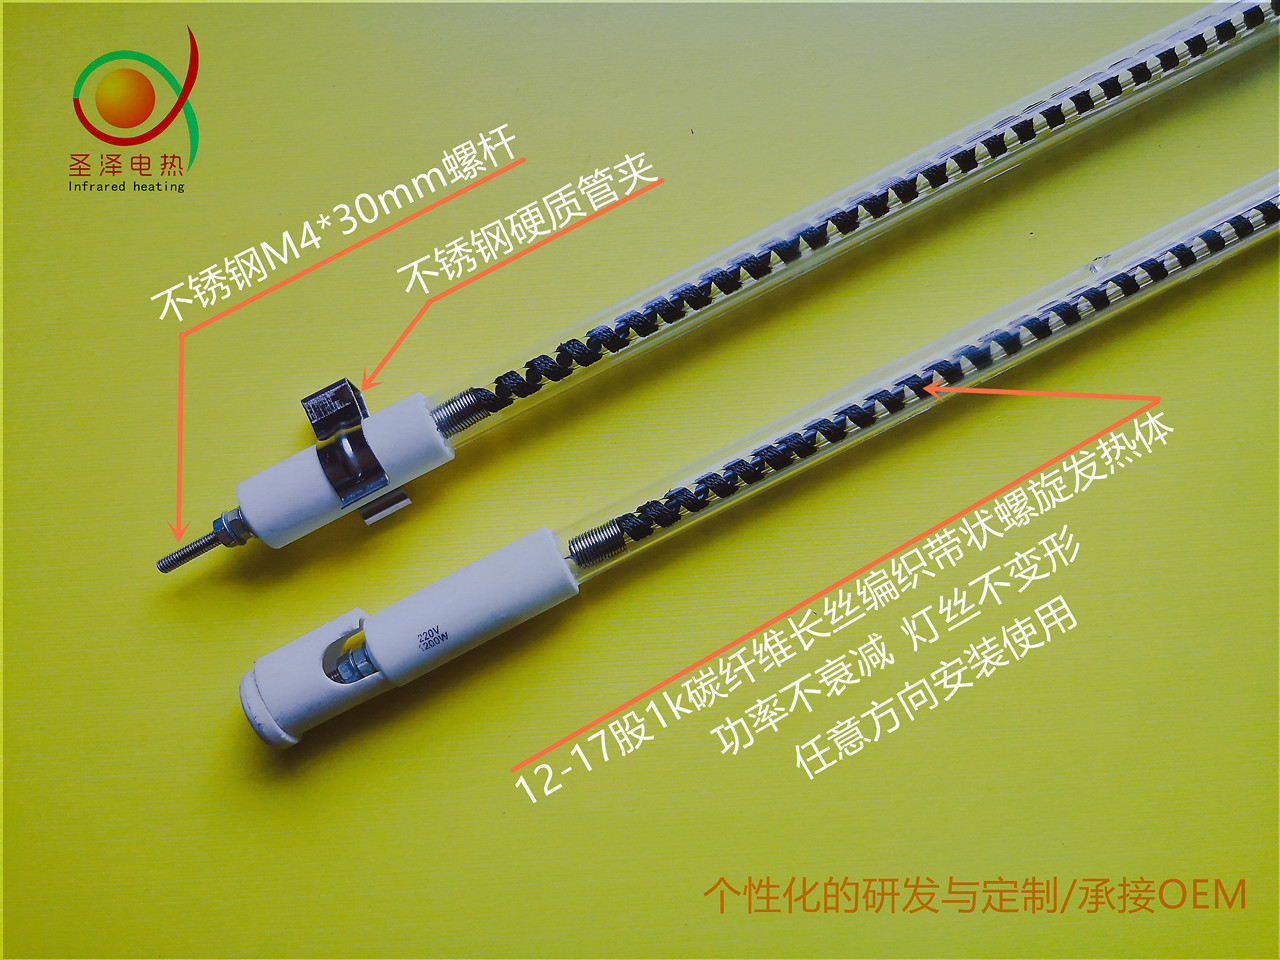 螺杆型碳纤维电热管